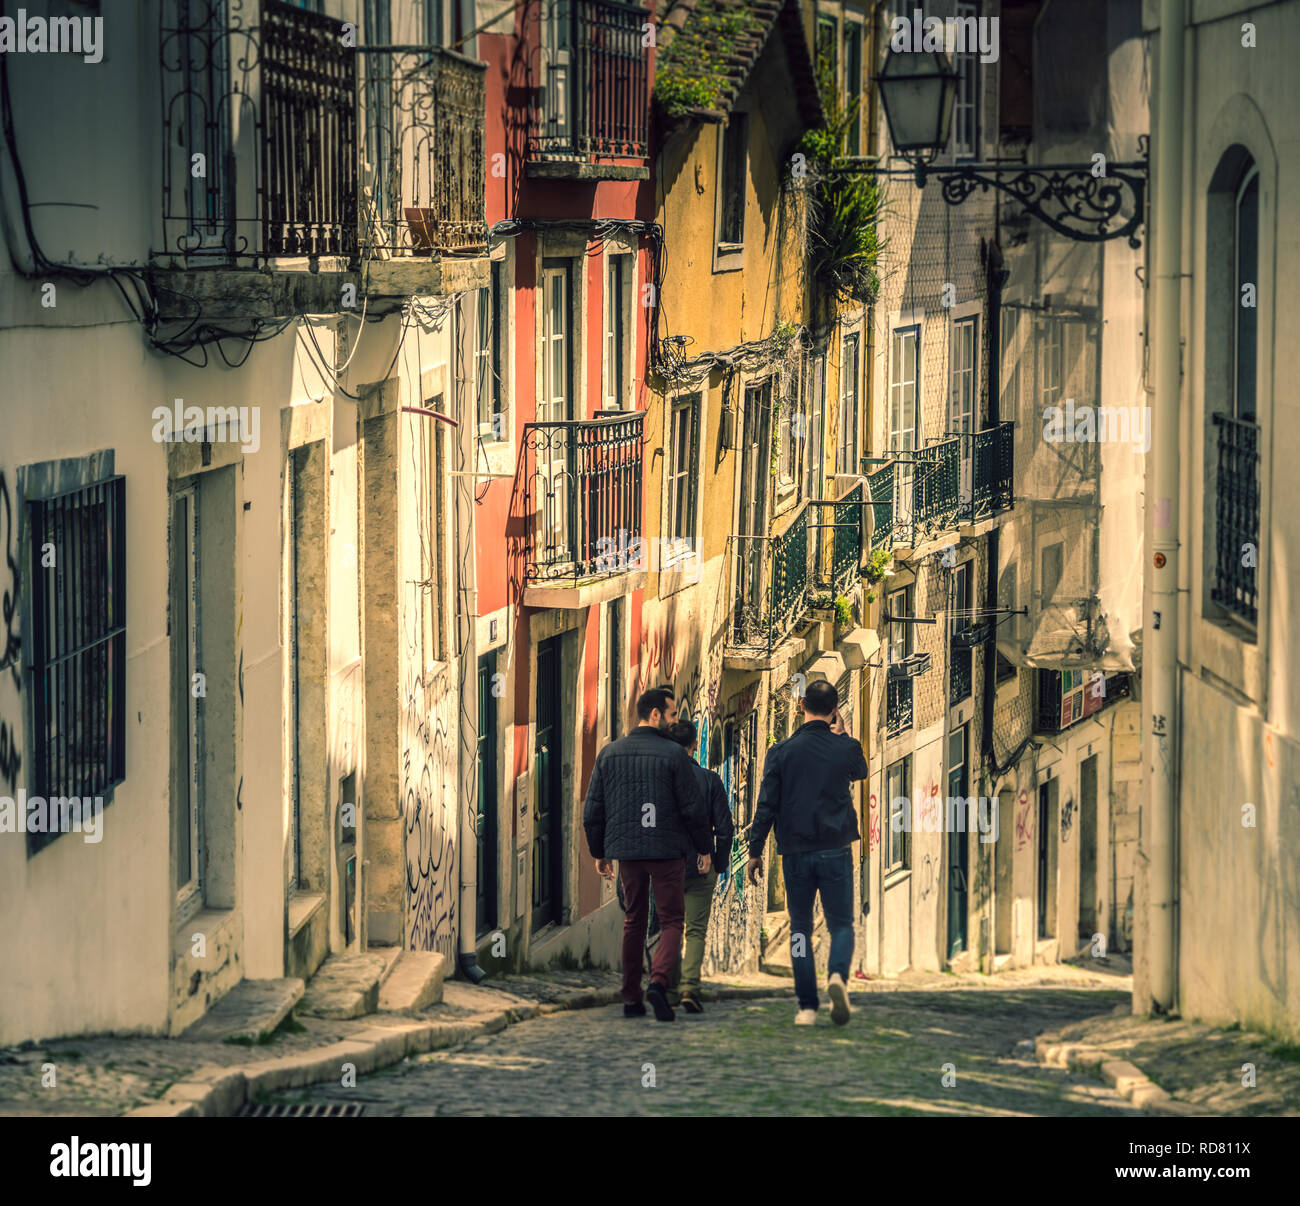 Trois hommes descendant une rue escarpée dans le quartier Bairro Alto de Lisbonne, Portugal. Banque D'Images